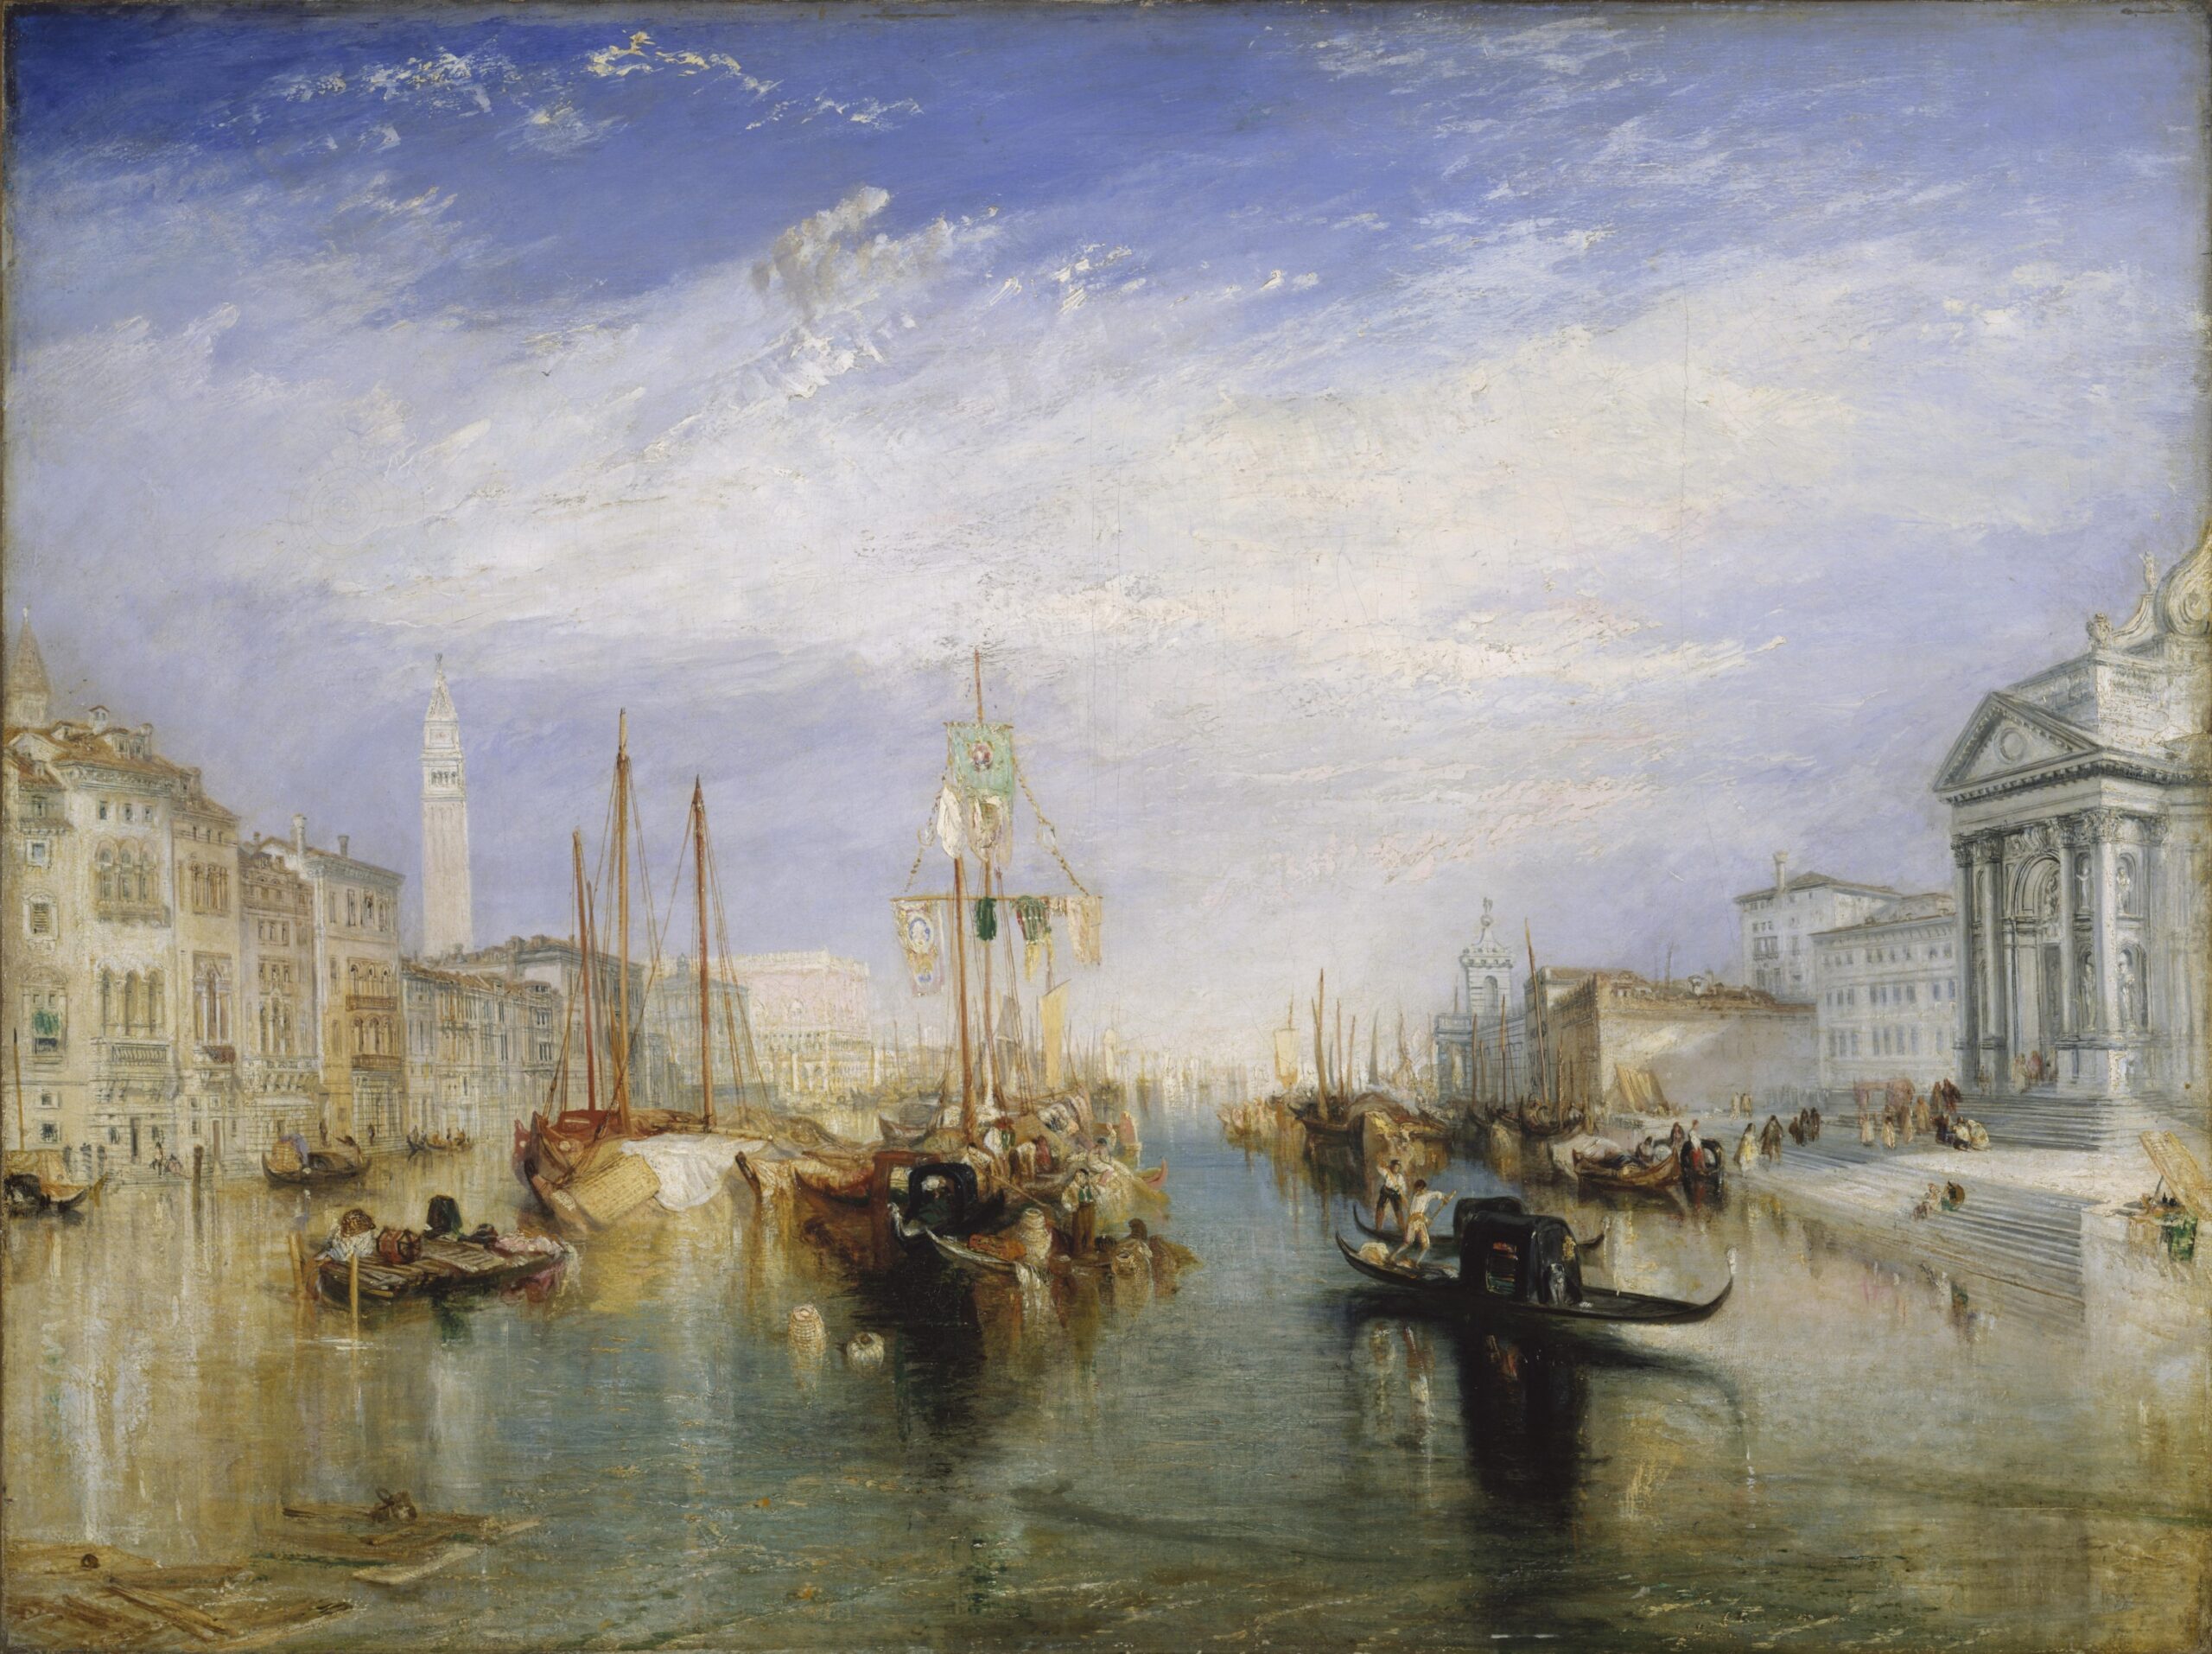 The Grand Canal - Venice - Joseph Mallord William Turner